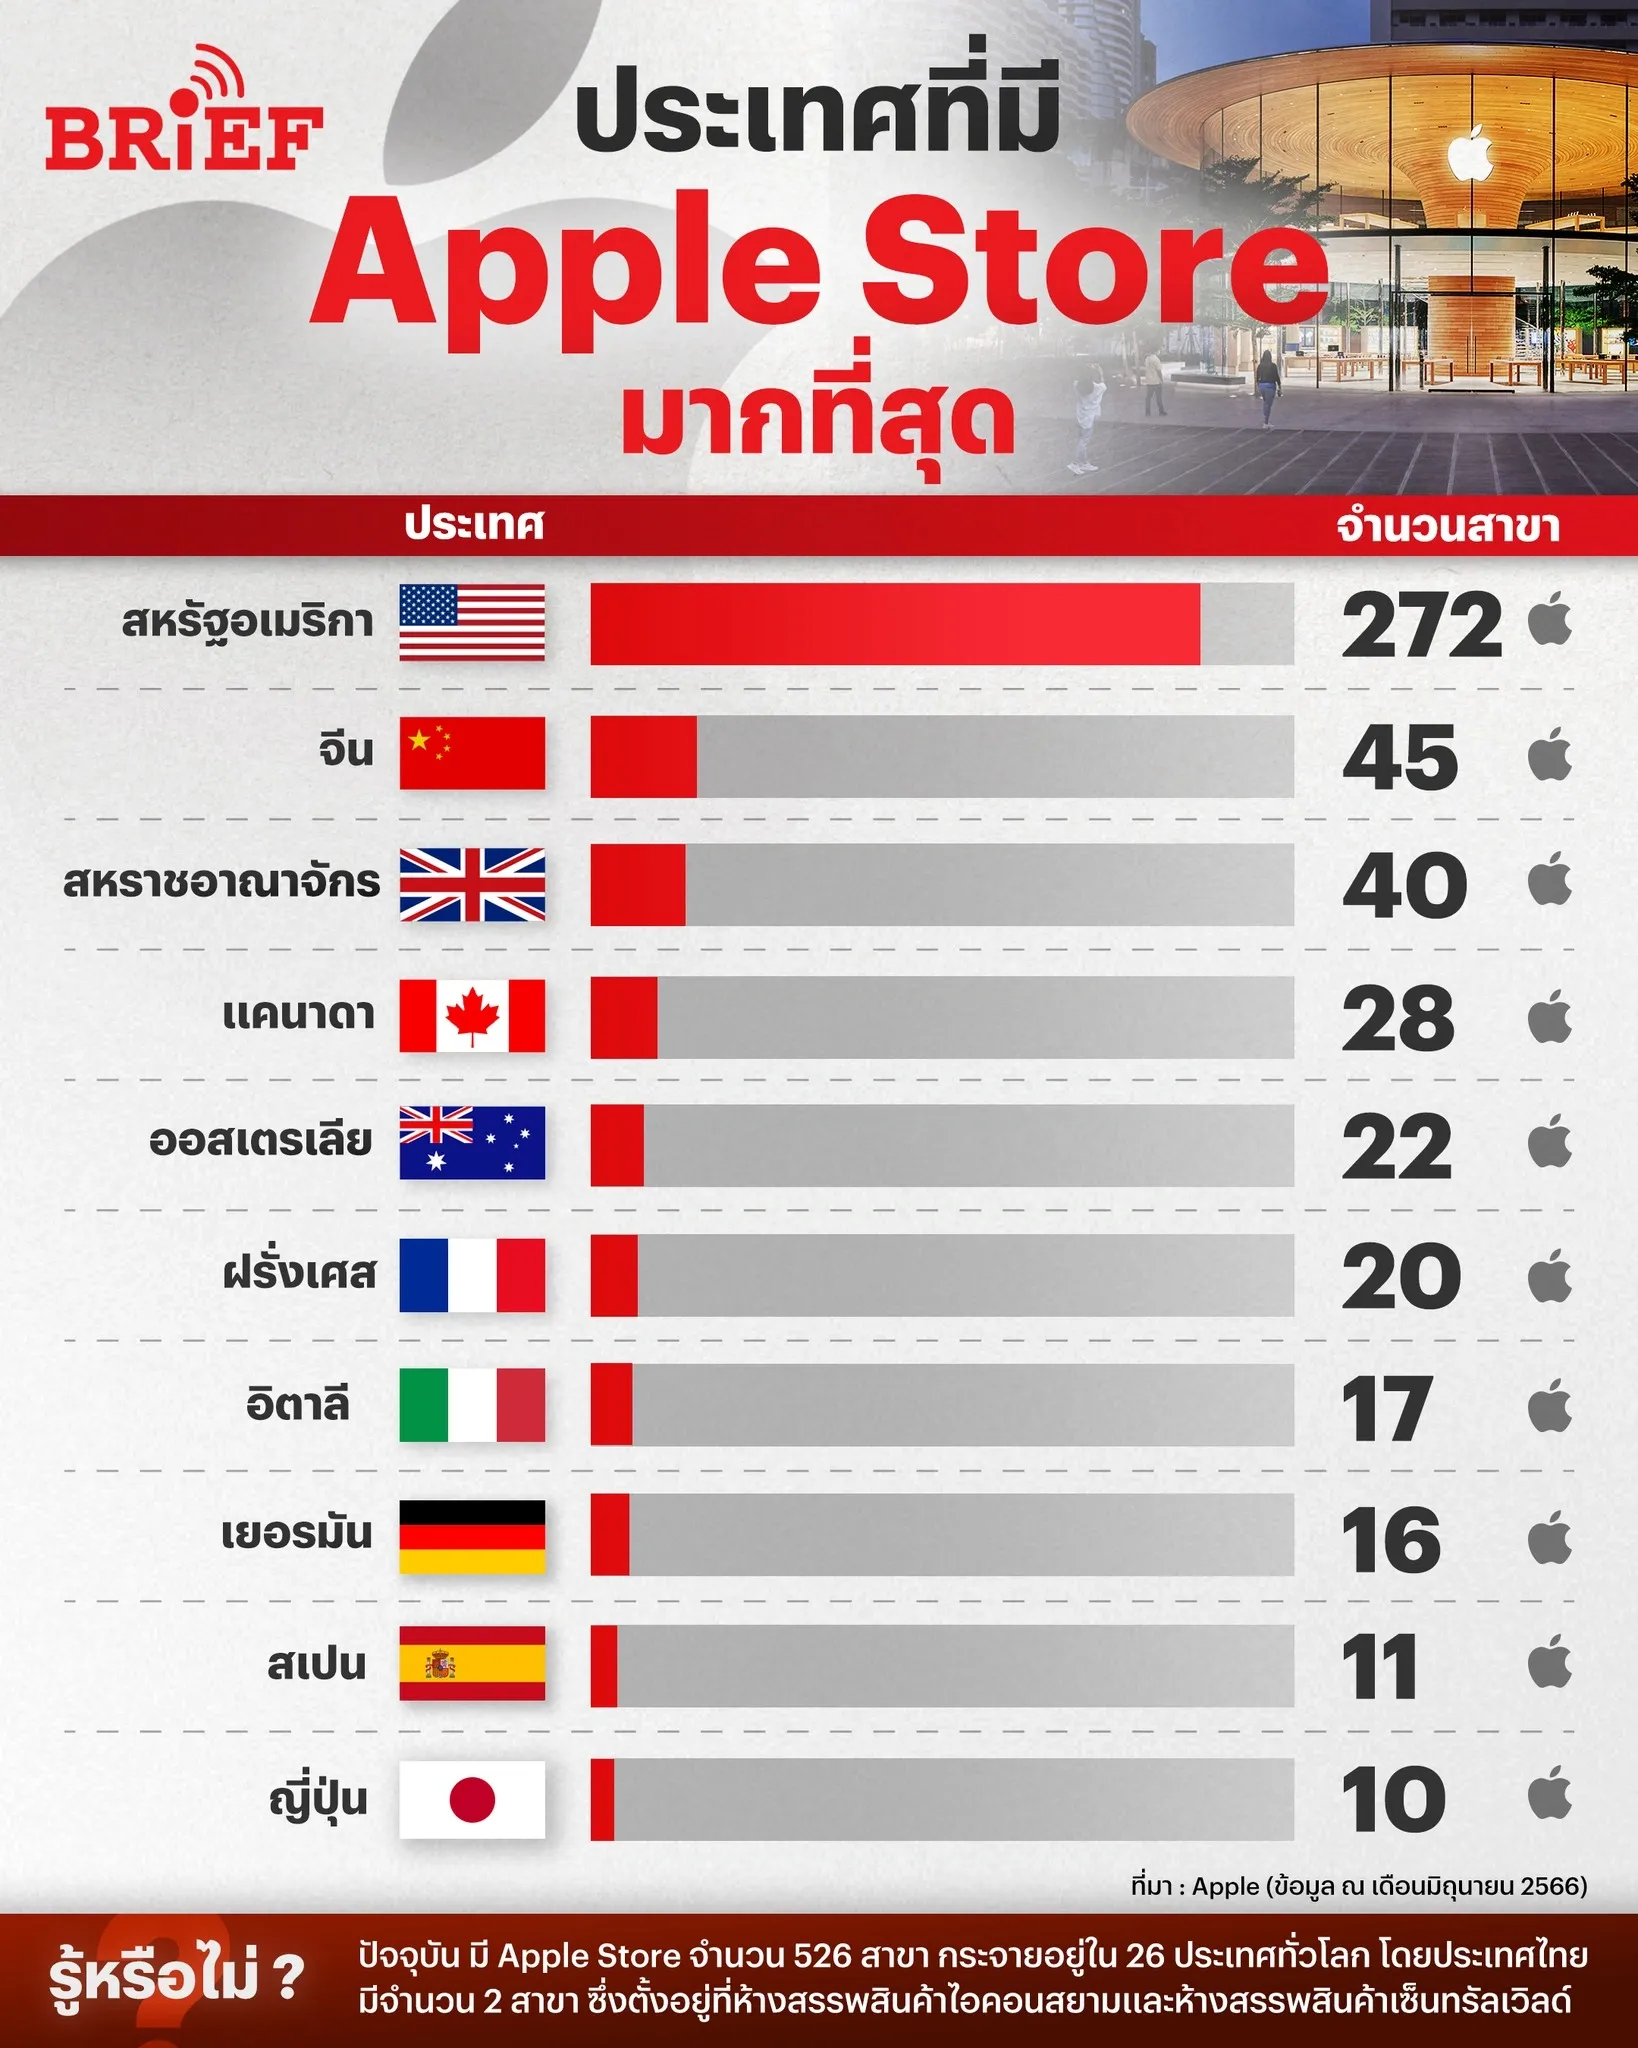 ประเทศที่มี Apple Store มากที่สุด